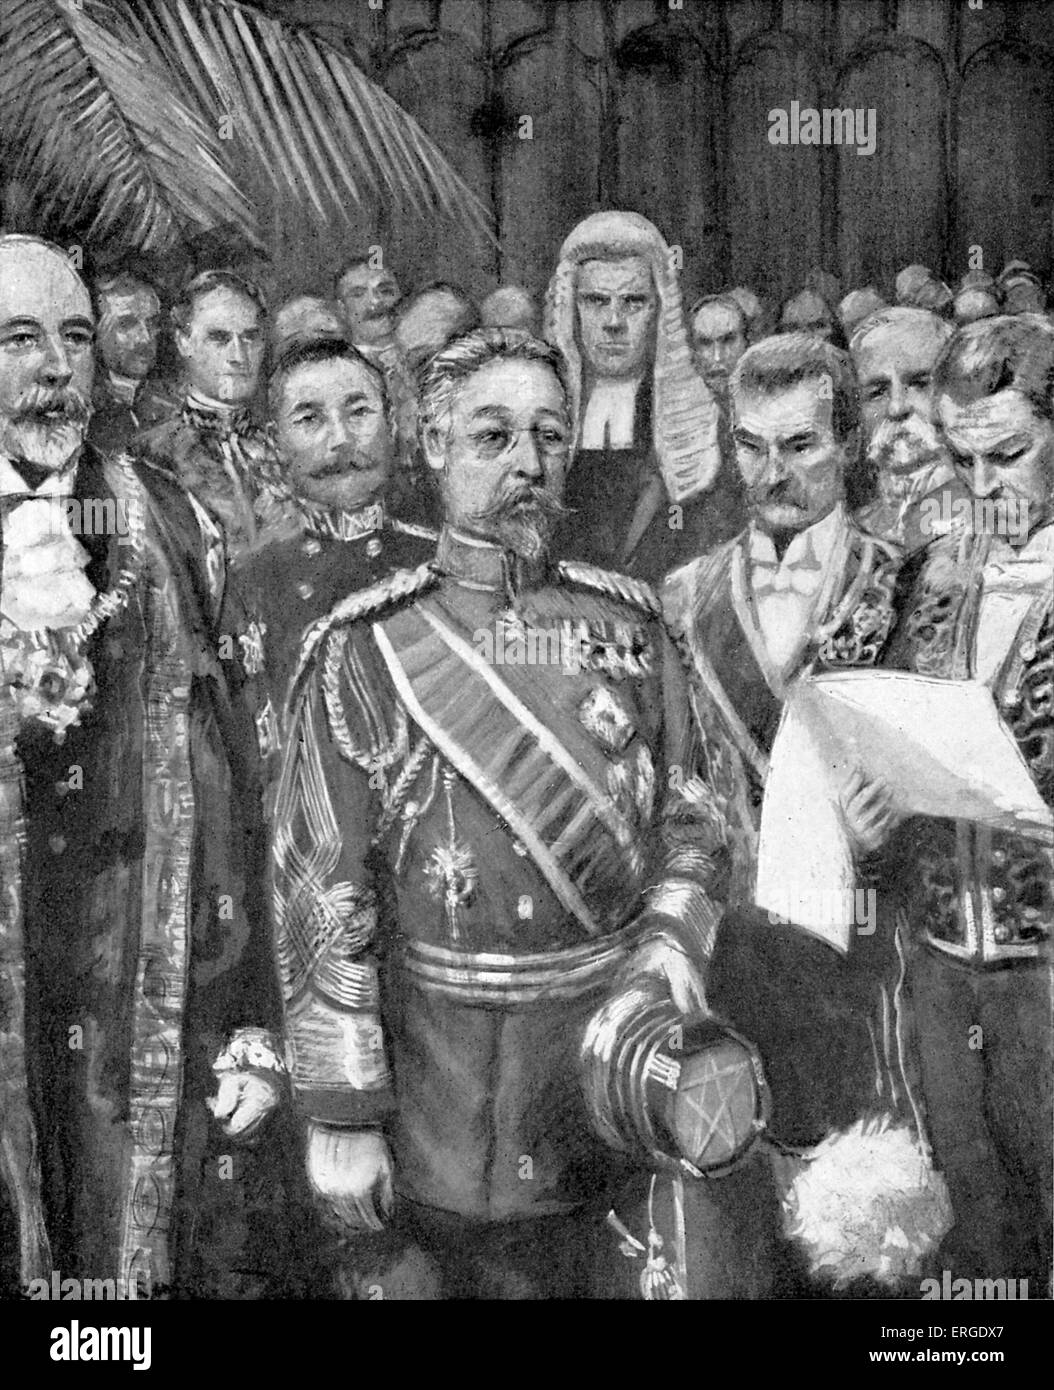 Il principe Fushimi Sadanaru 's visita in Gran Bretagna - presso la Guildhall, Londra, maggio 1907. Dal disegno di Arthur Garratt del periodo. Xxii capo di Fushimi-nessun miya shinnōke (ramo della Famiglia Imperiale) del Giappone e leader militari, 9 giugno 1858 - 4 febbraio 1923. Foto Stock